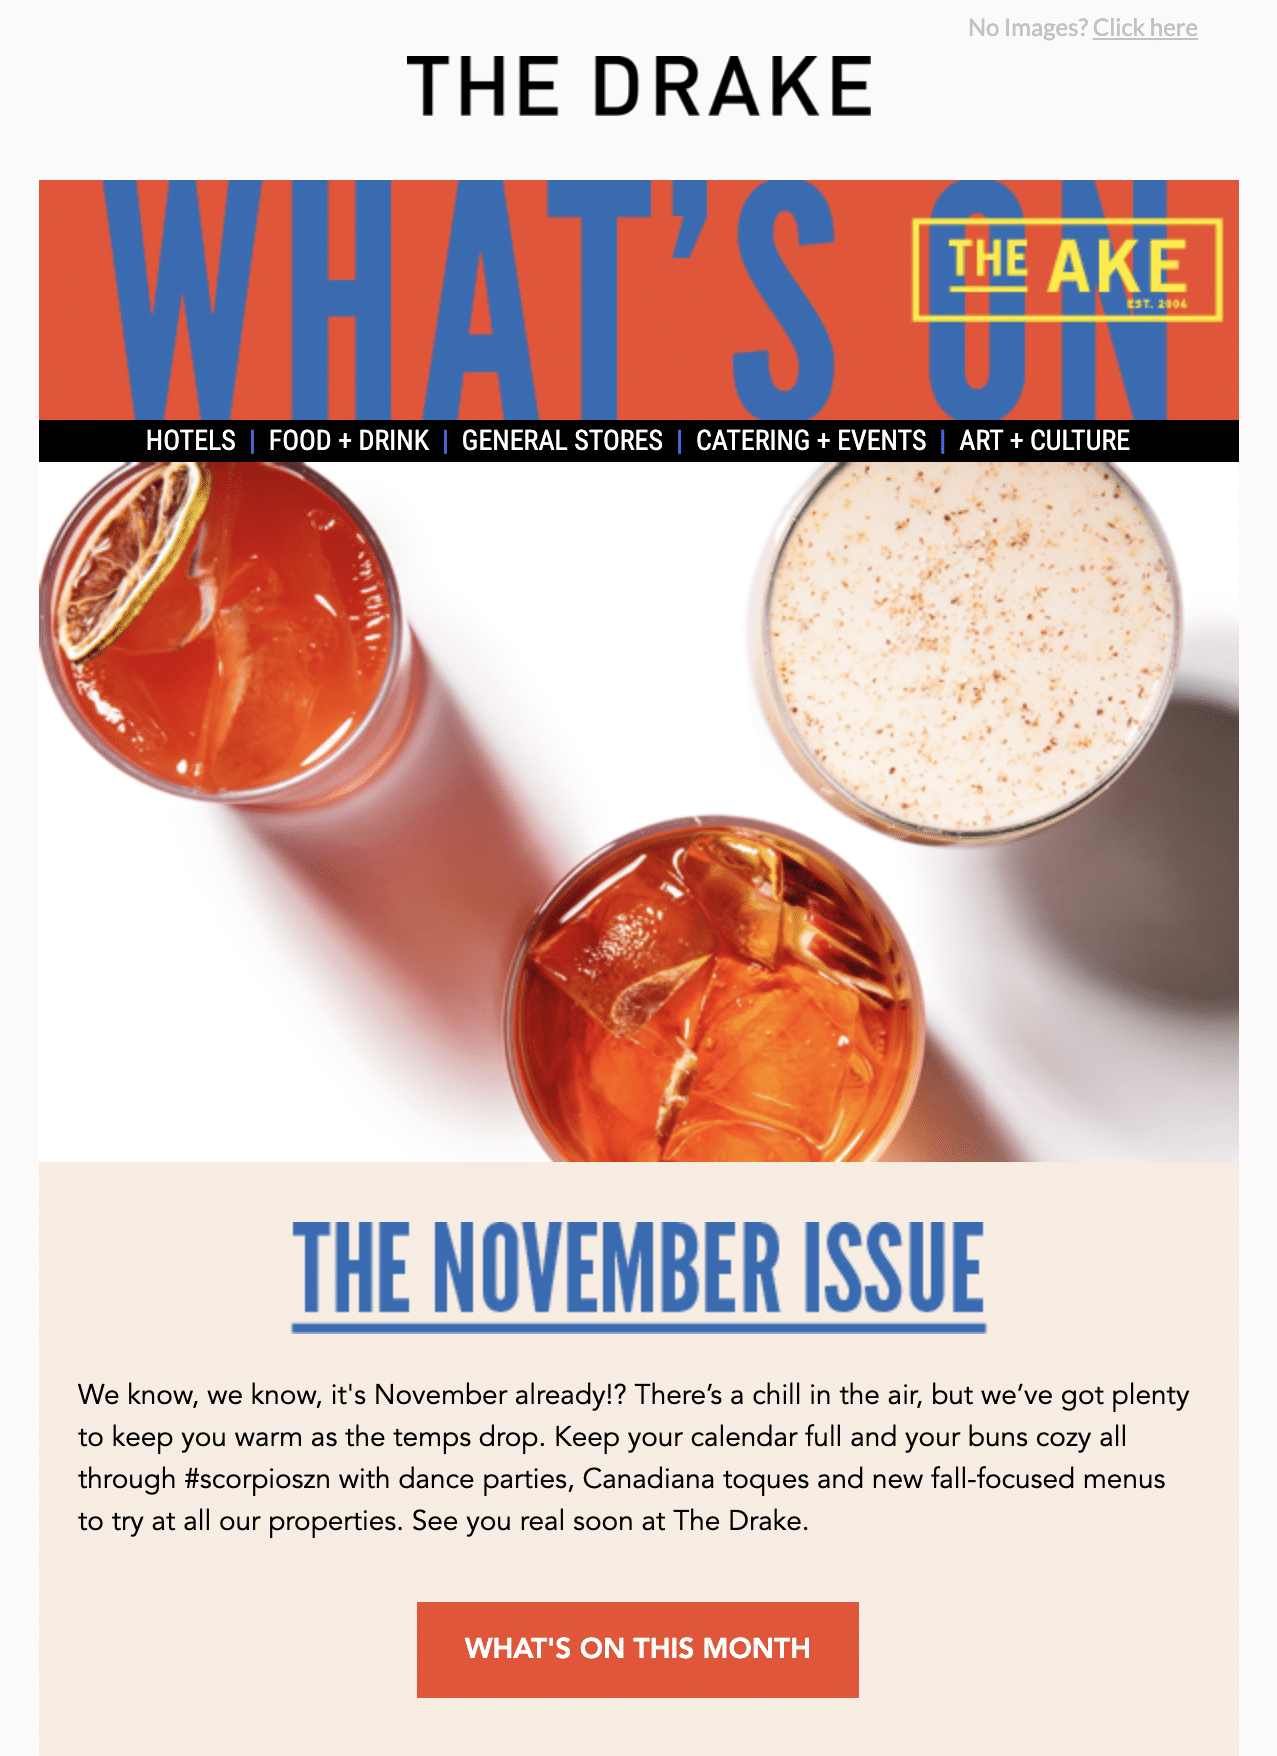 The Drake November newsletter